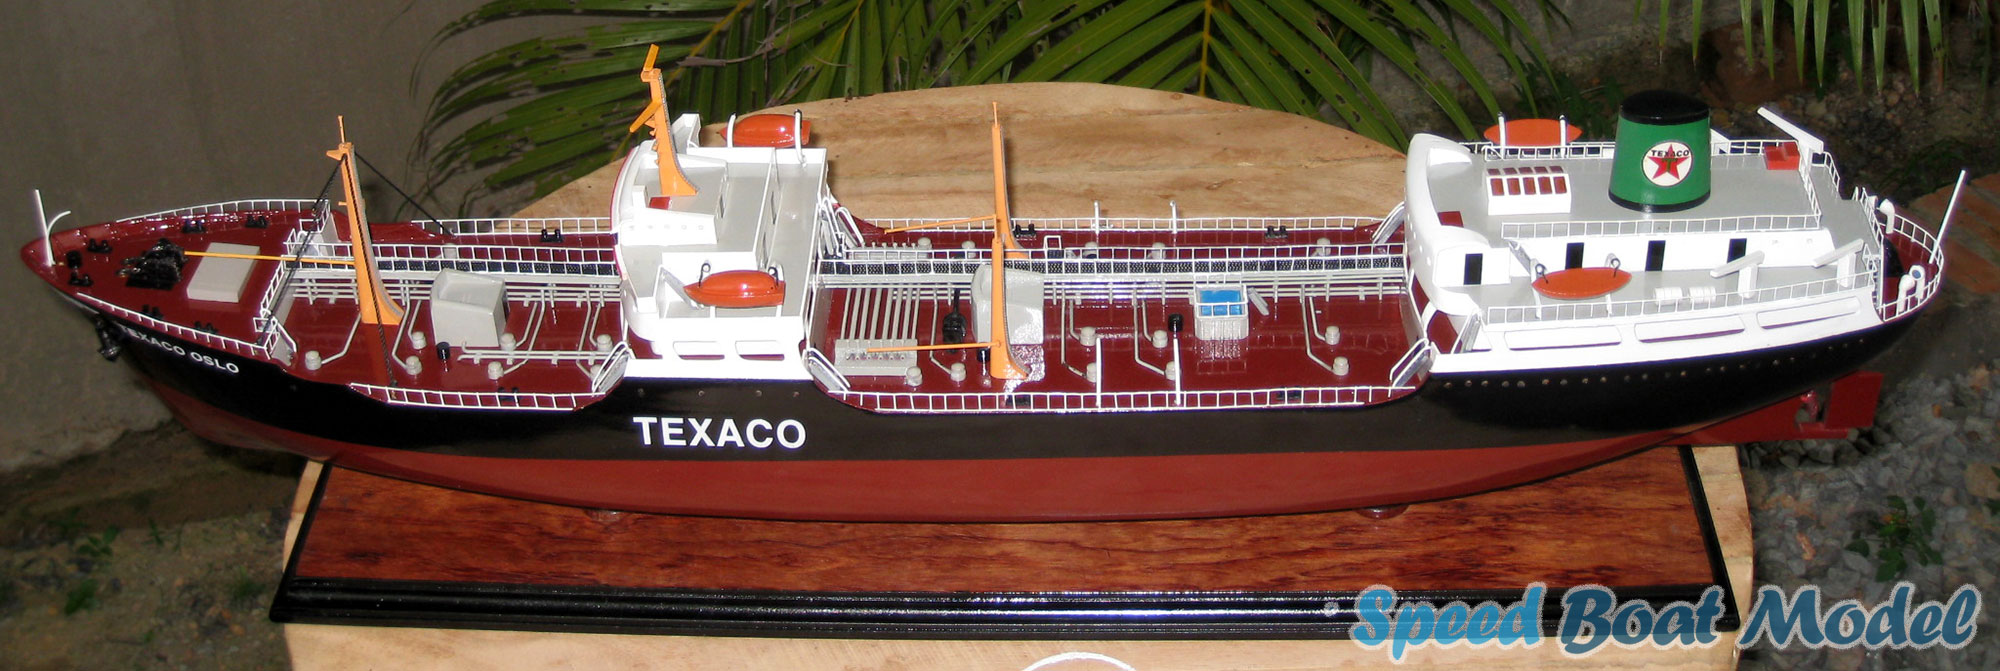 Texaco Oslo Commercial Ship Model 31.5"